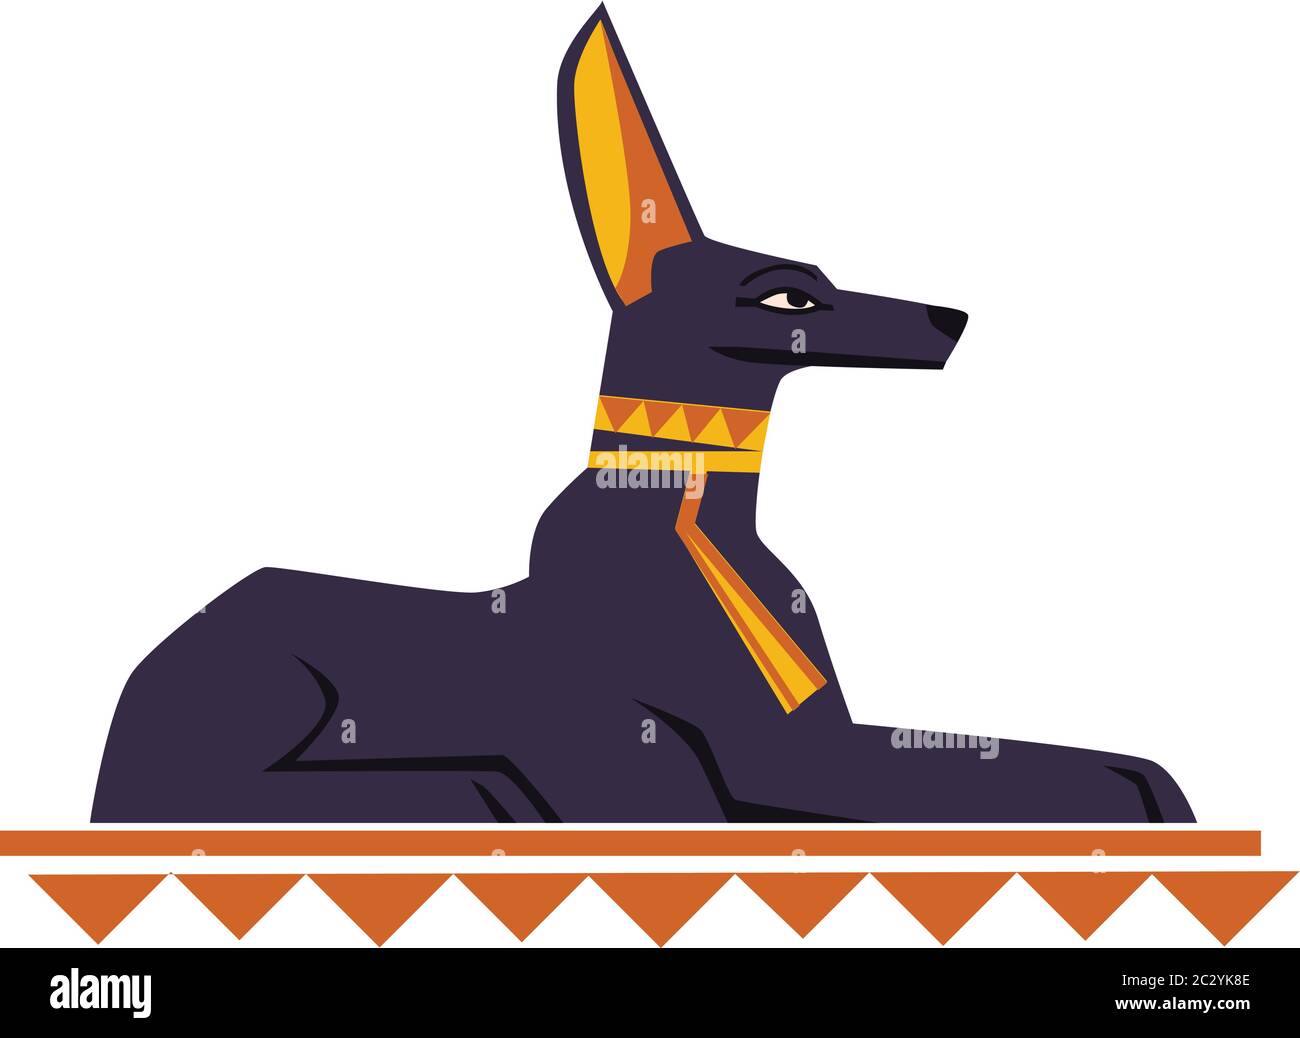 Alte Ägypten gott Hund oder Schakal Vektor Cartoon Illustration. Ägyptische Kultur Symbol, schwarze Statue des gottes Anubis, heilige Tier isoliert auf weiß Stock Vektor